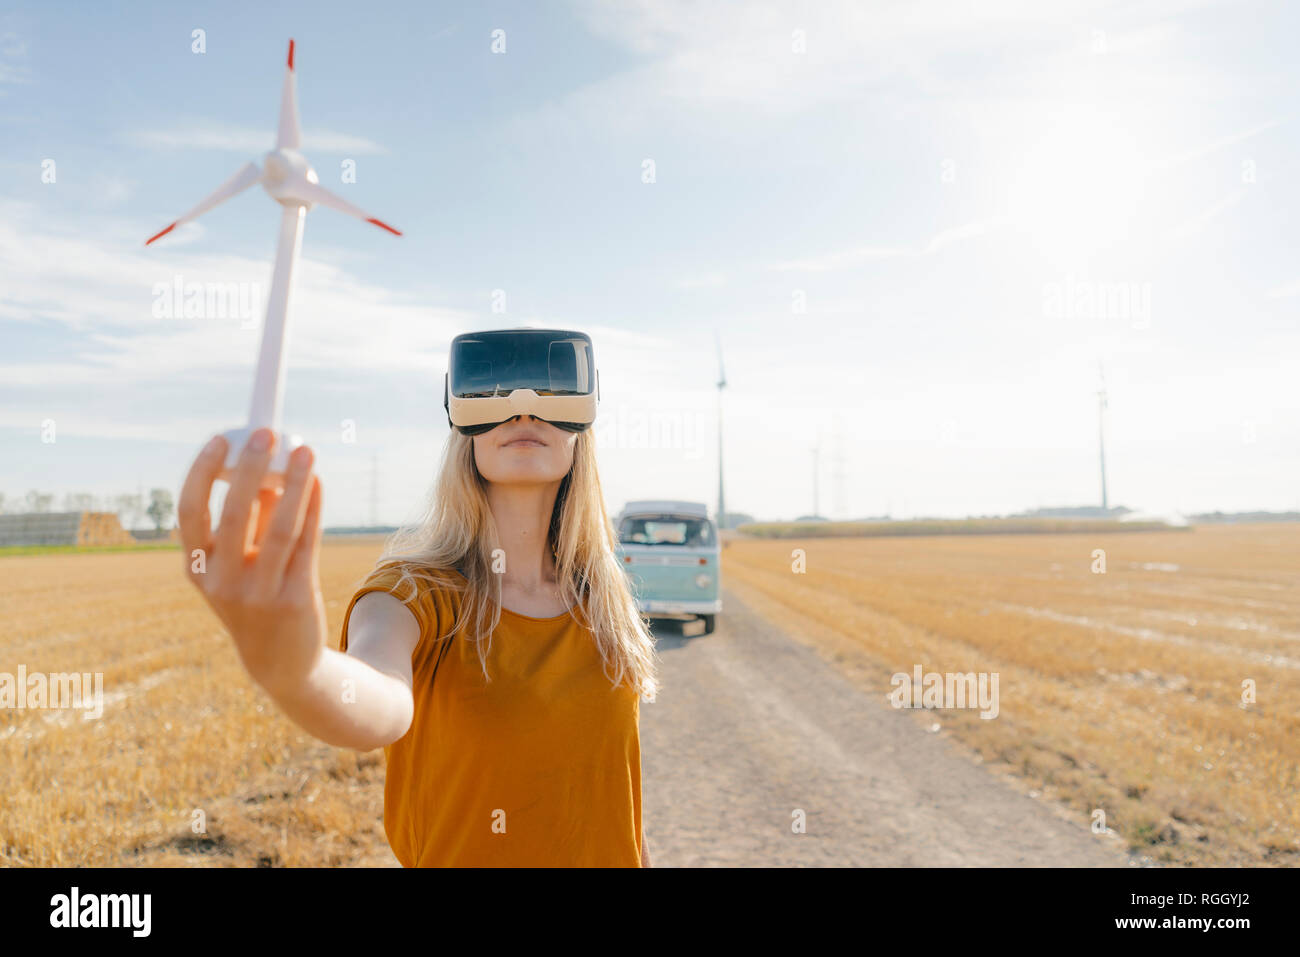 Junge Frau mit VR-Brille im Wohnmobil in ländlichen Landschaft Holding wind turbine Modell Stockfoto